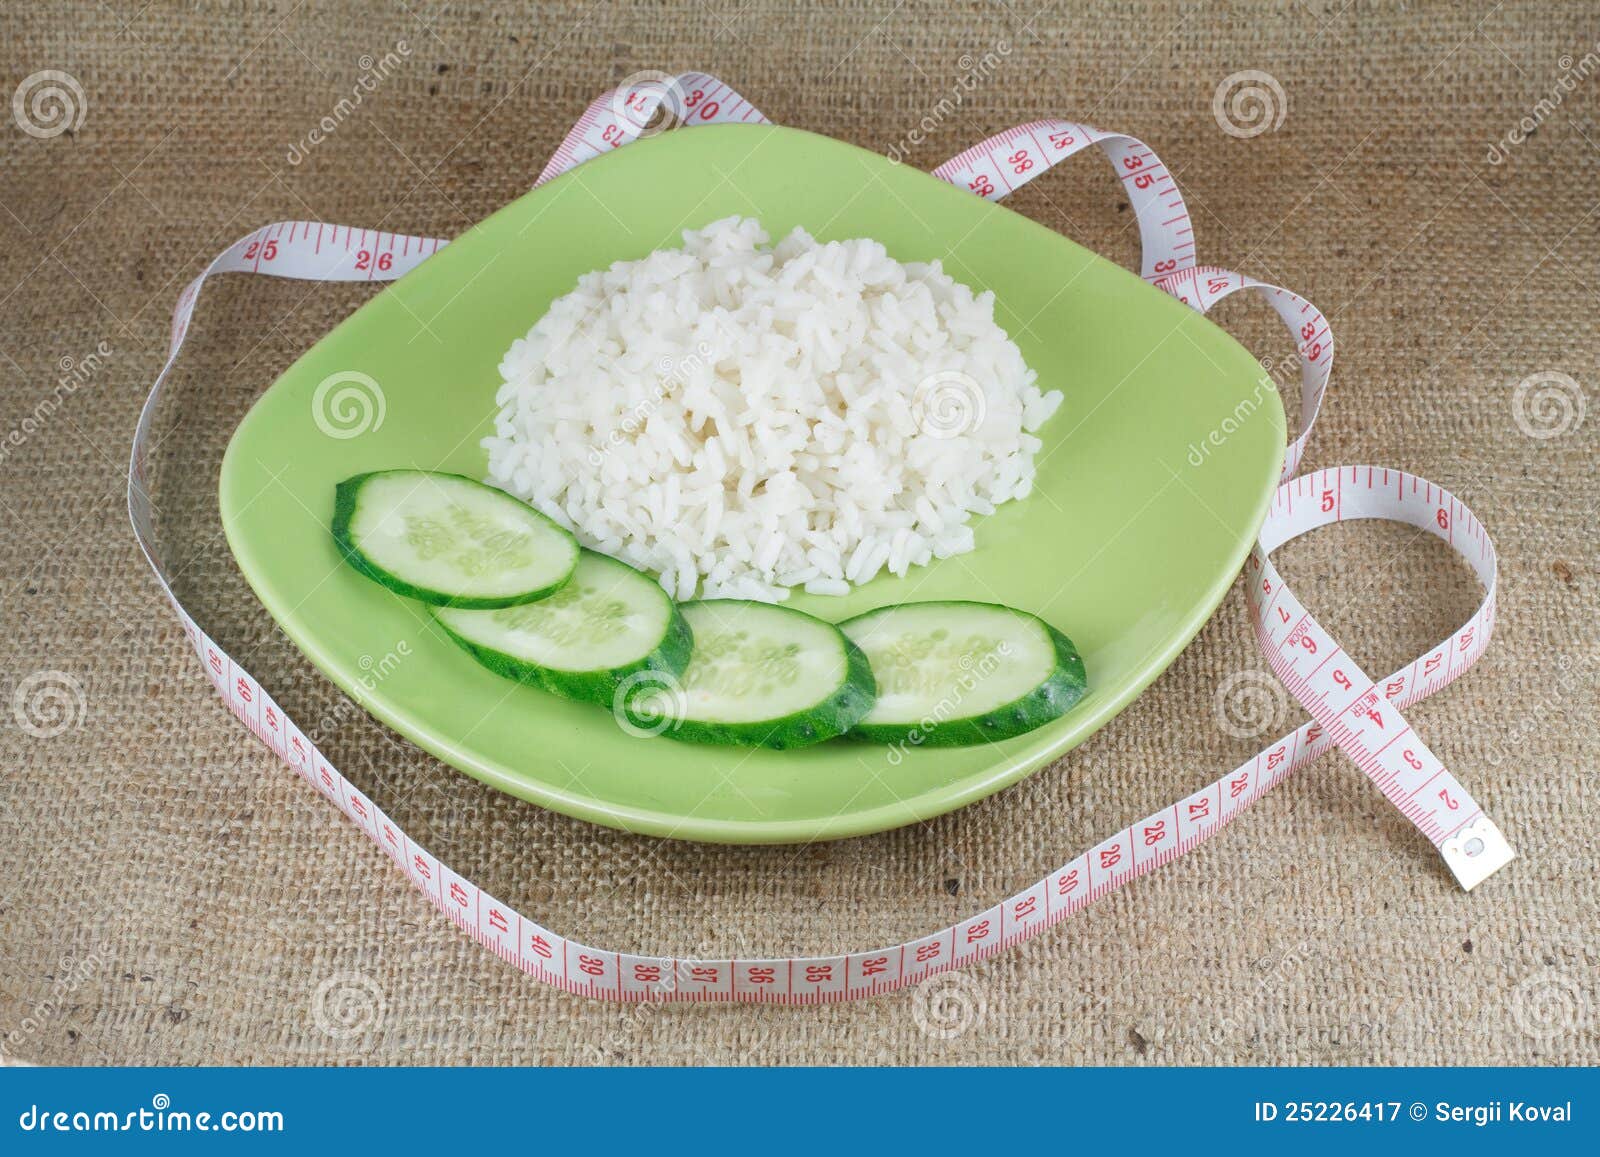 Недоваренный рис для похудения в домашних условиях